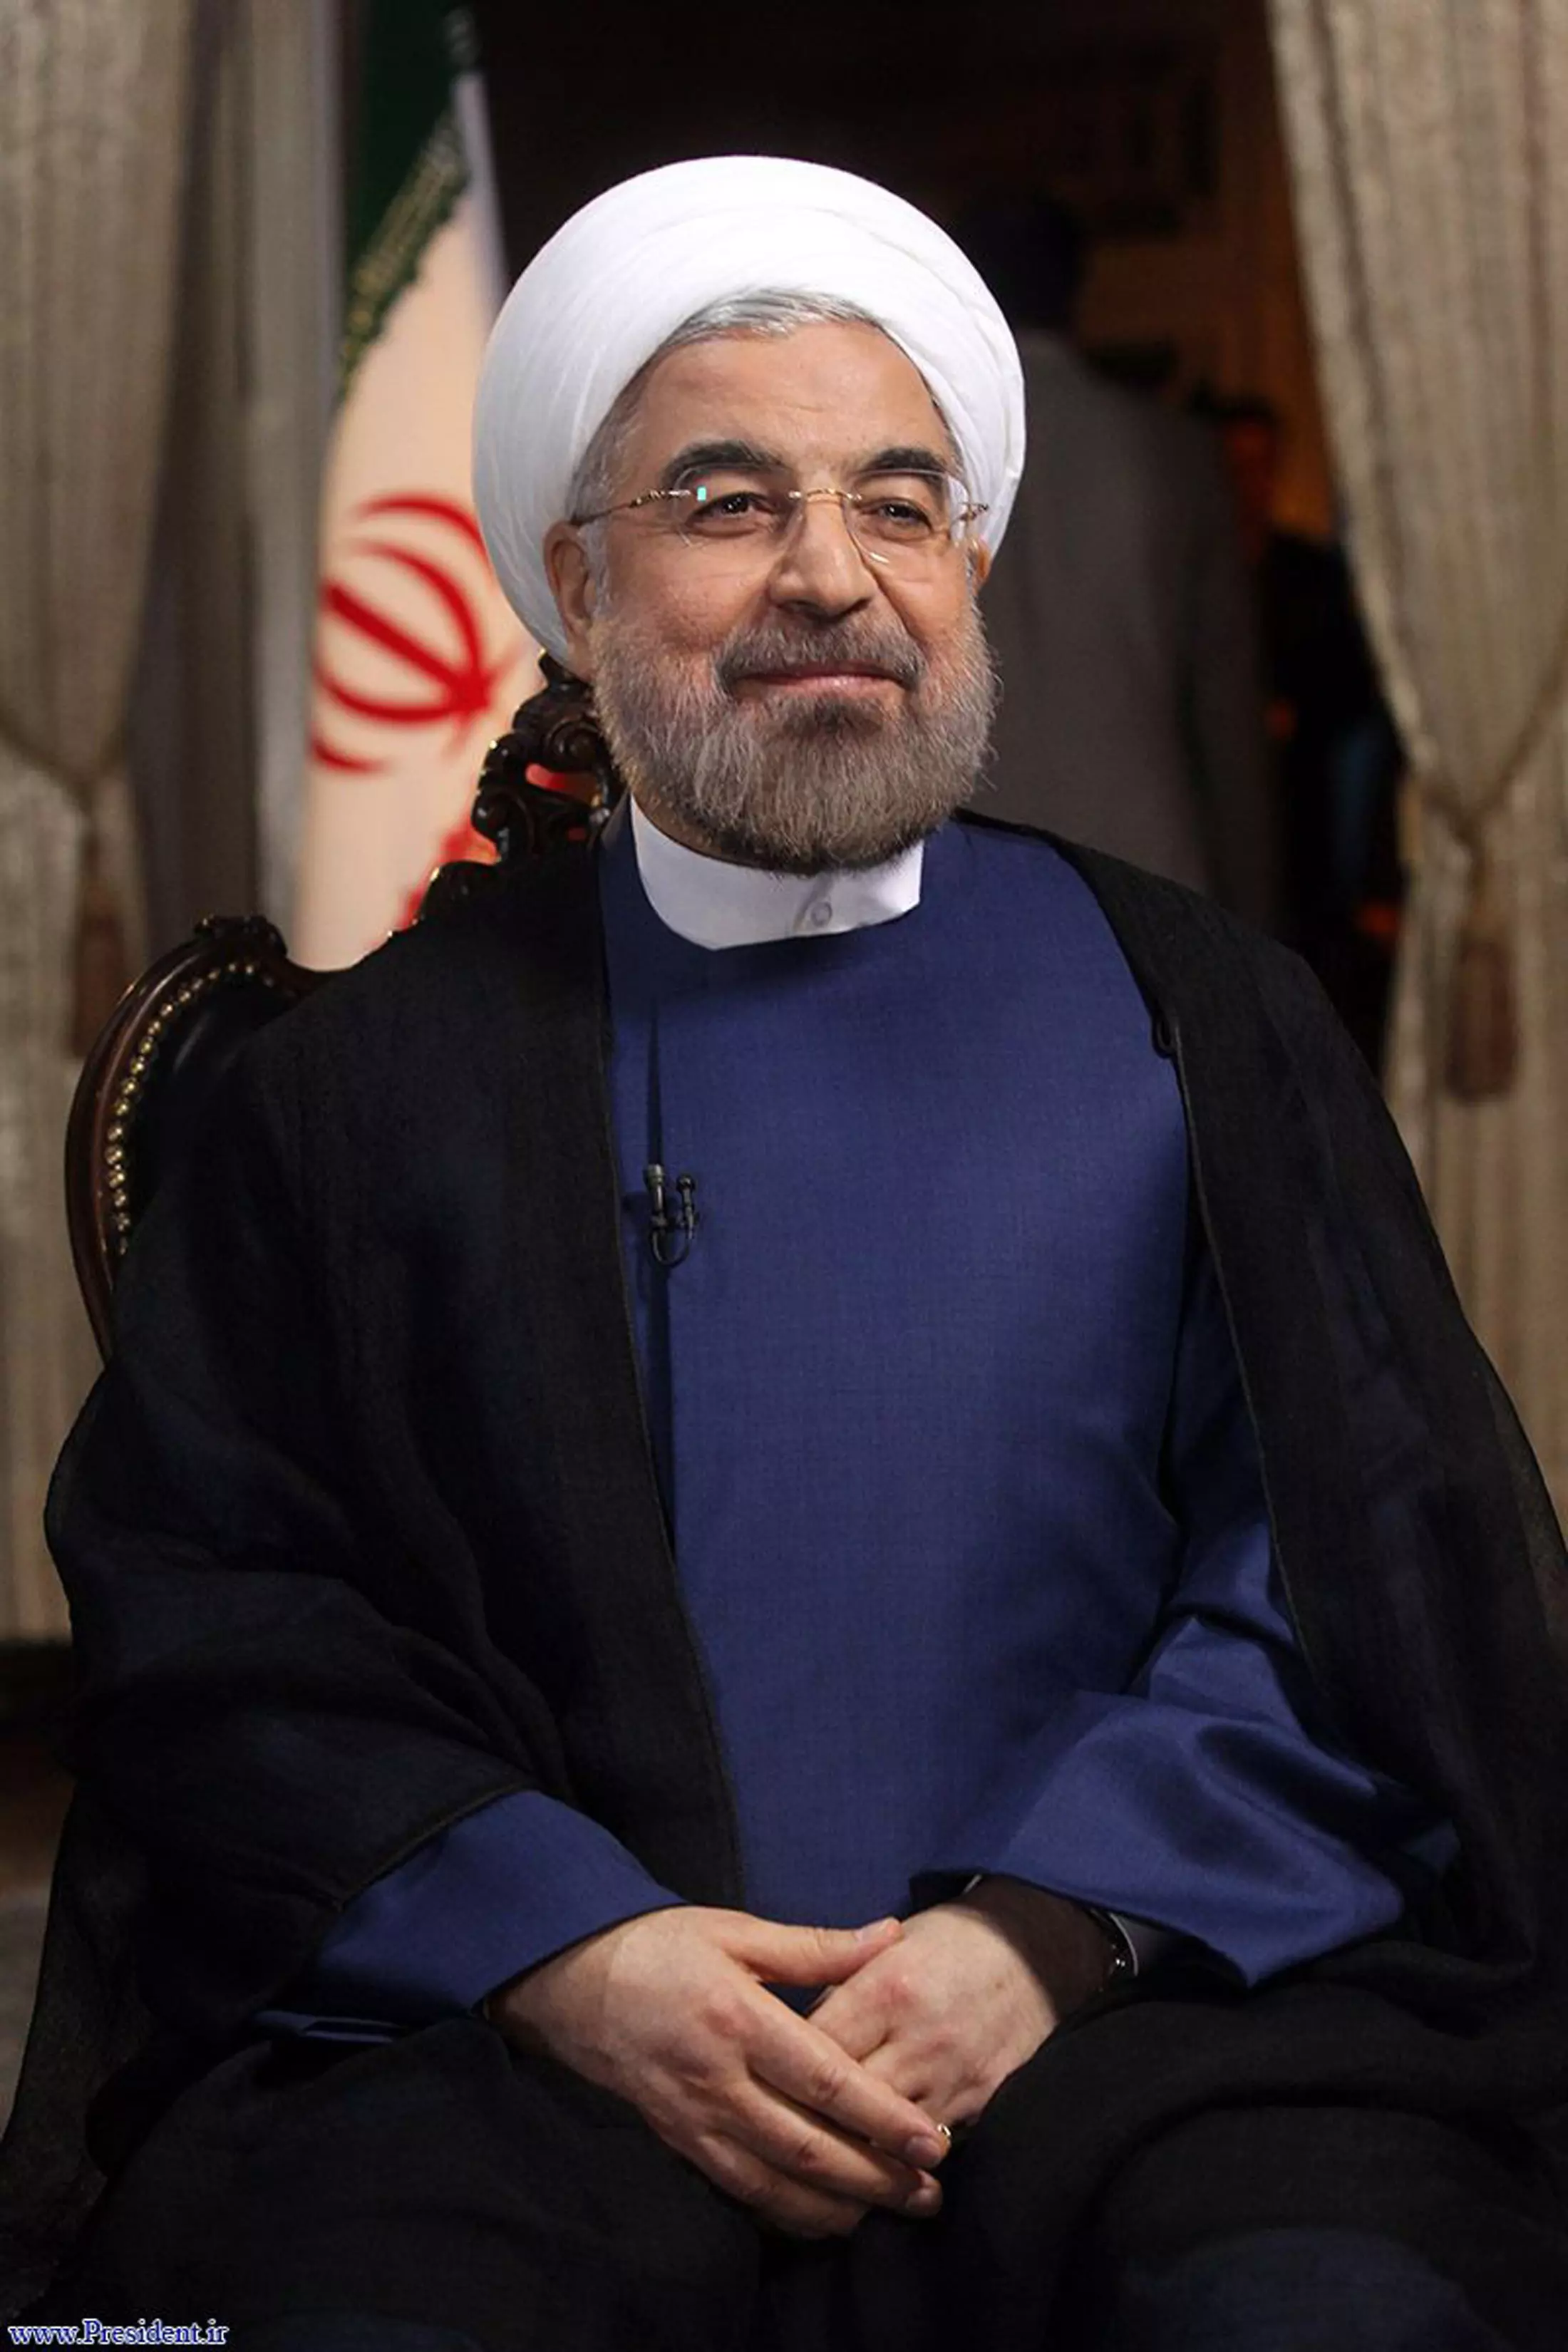 יצטרך לתת "תוקף מעשי, אמין ושקוף לדבריו". נשיא איראן, רוחאני